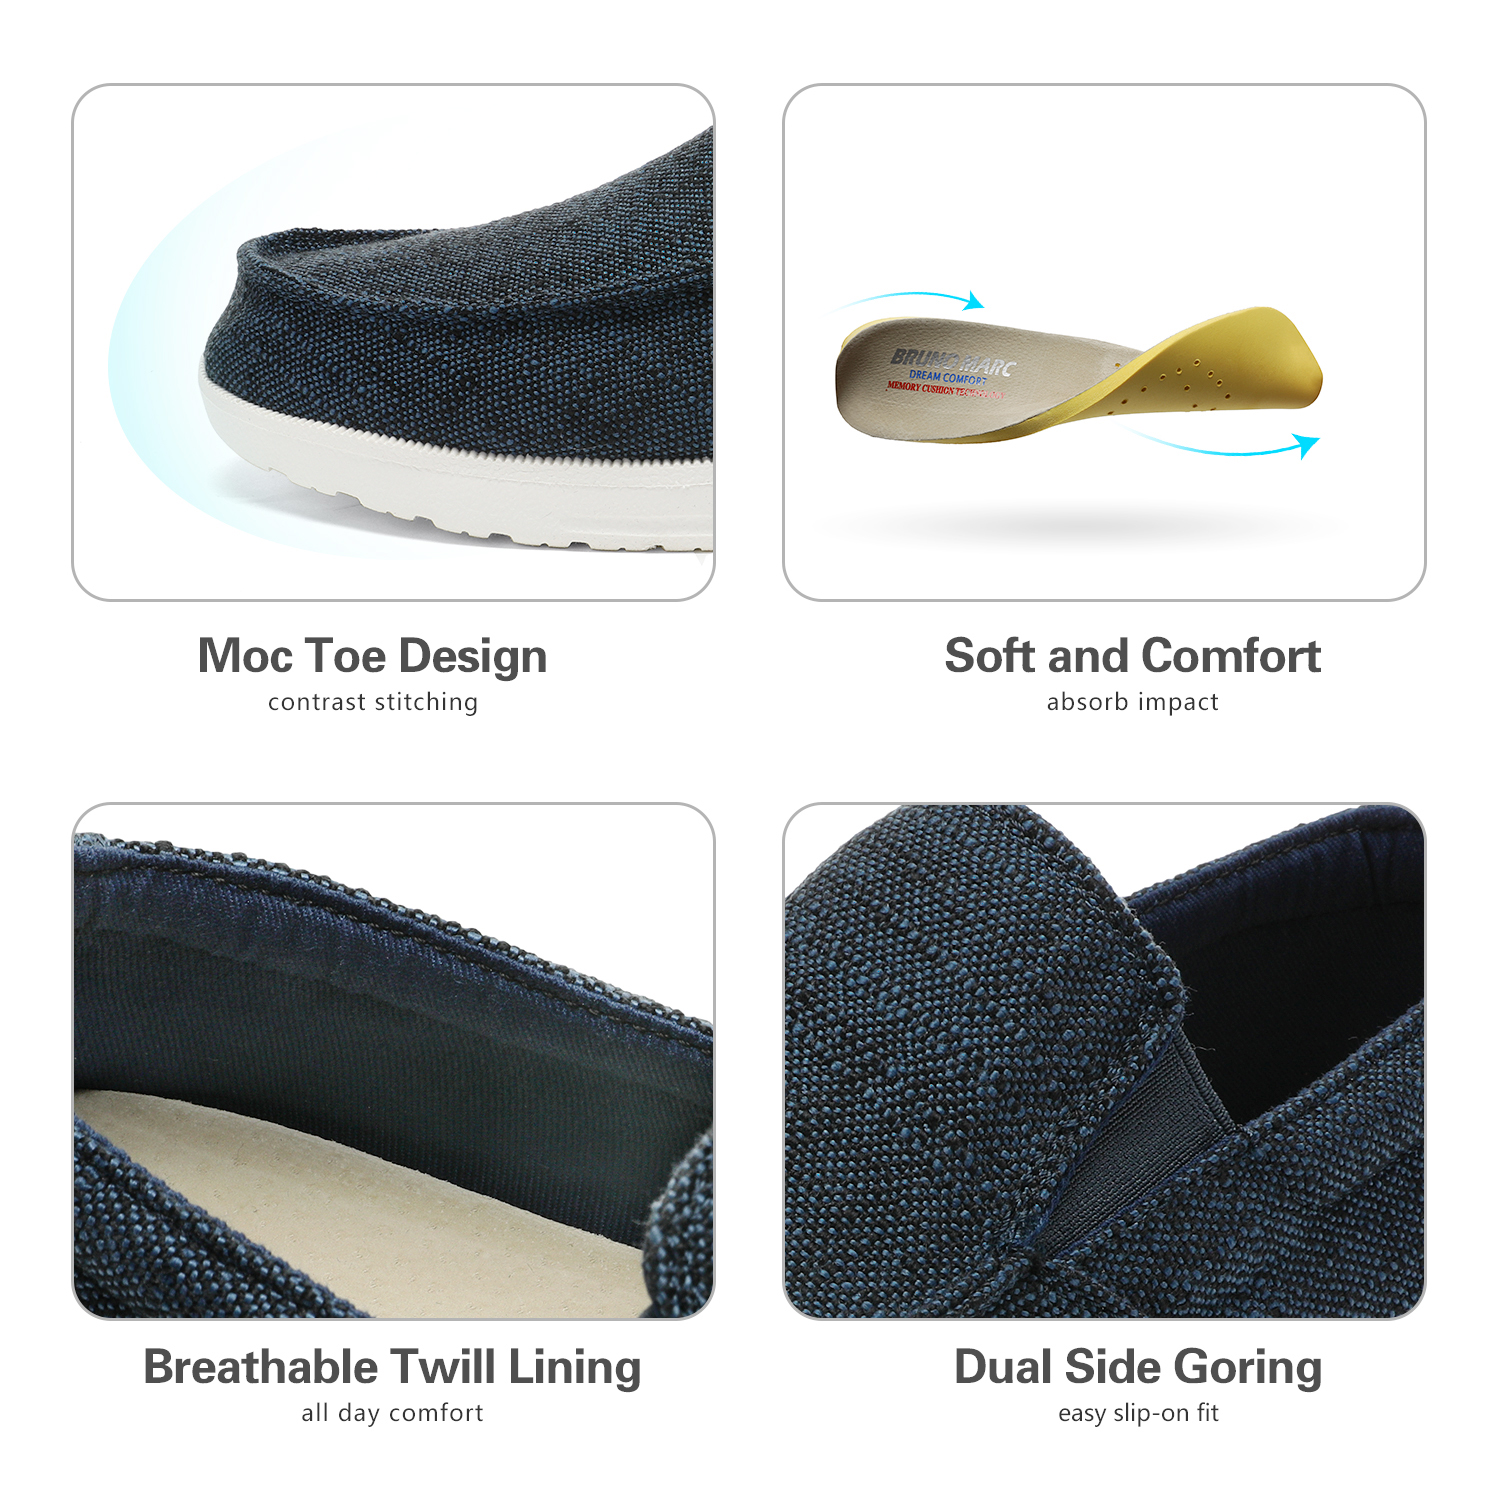 Bruno Marc Men's Slip On Loafer Walking Shoes SUNVENT-01 NAVY/BLUE size 8.5 - image 3 of 5